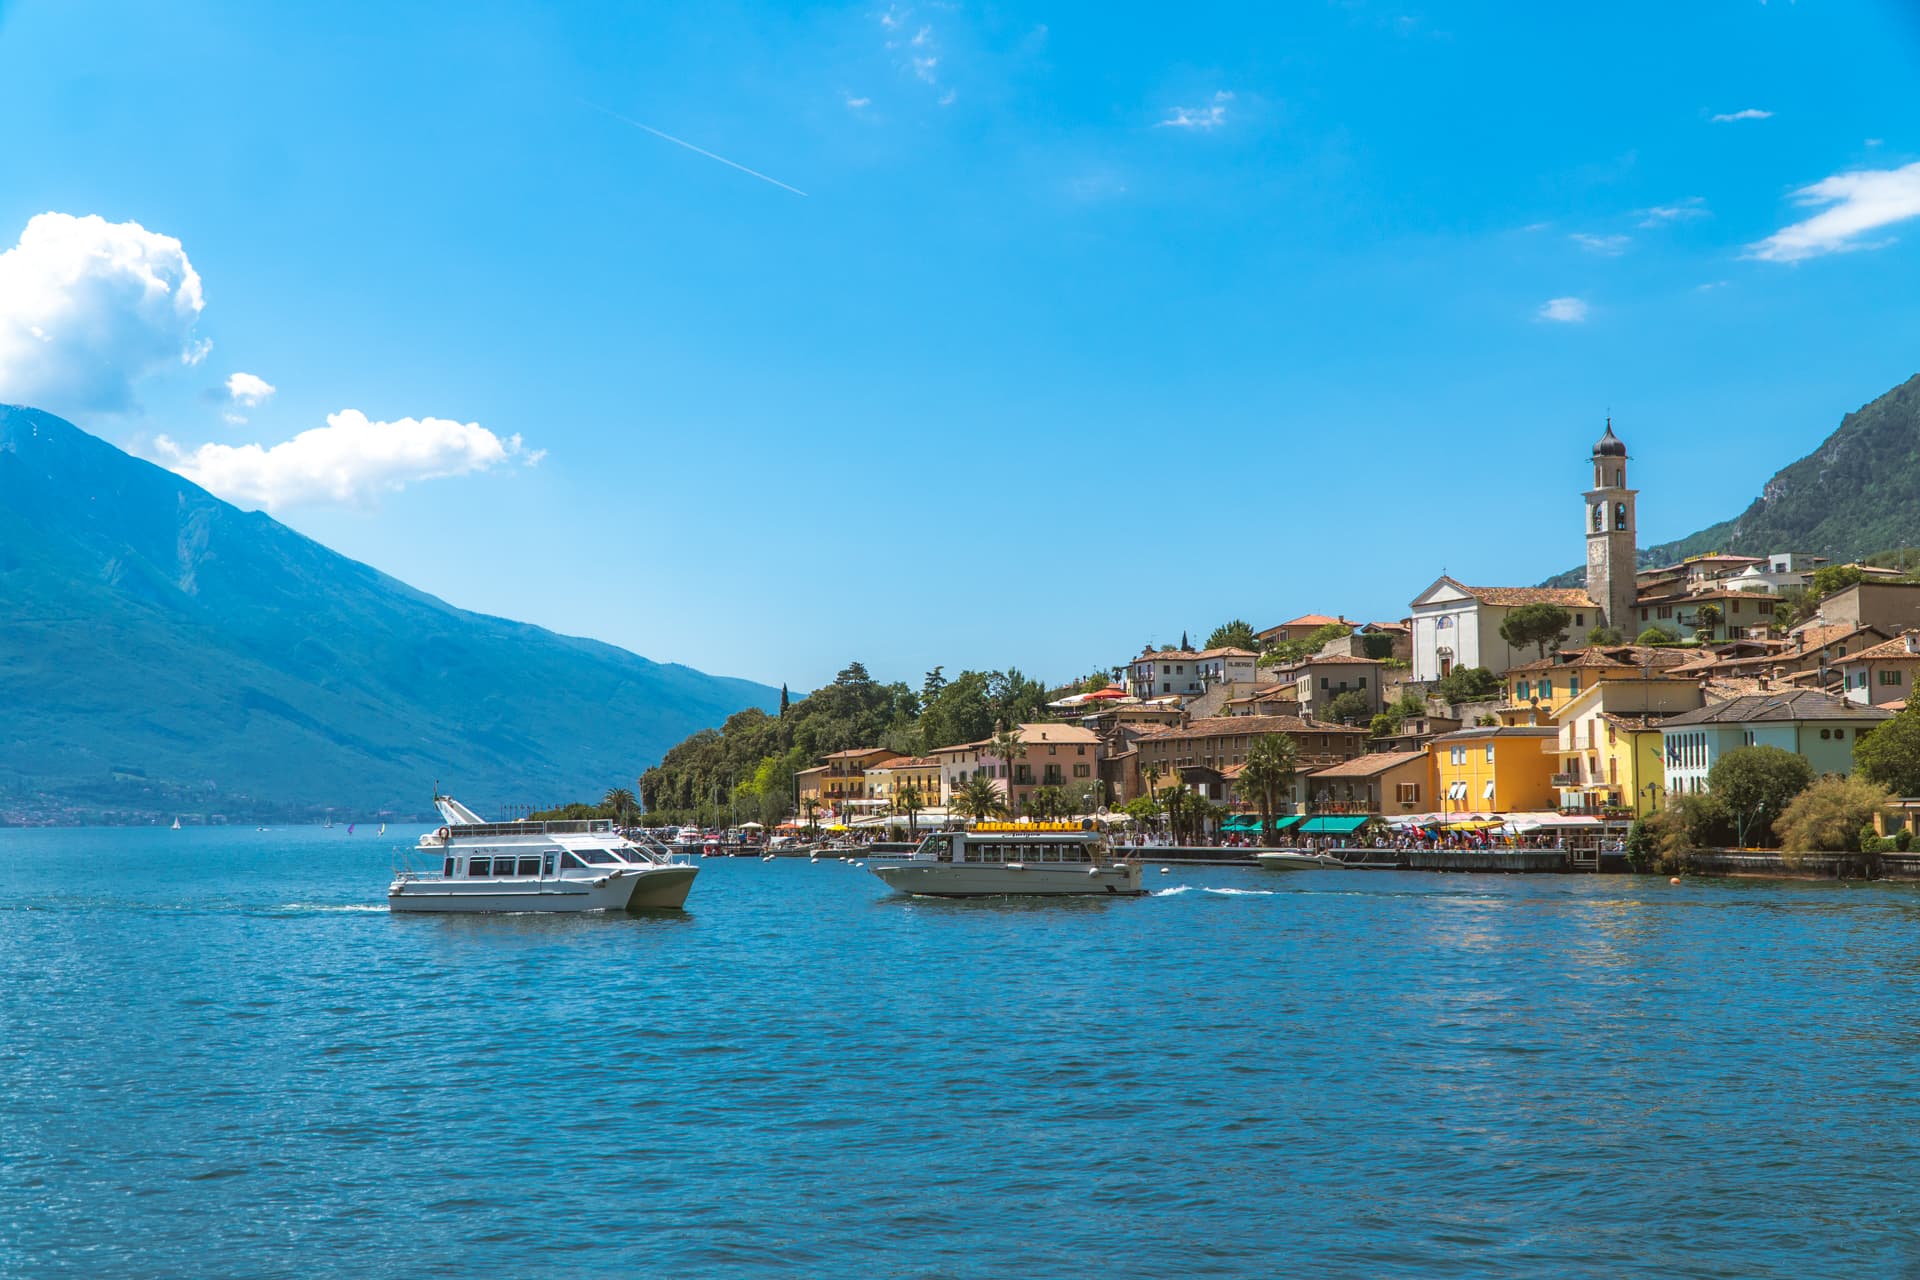 Widok z jeziora na Limone sul Garda | Jak dostać się nad Jezioro Garda ? 